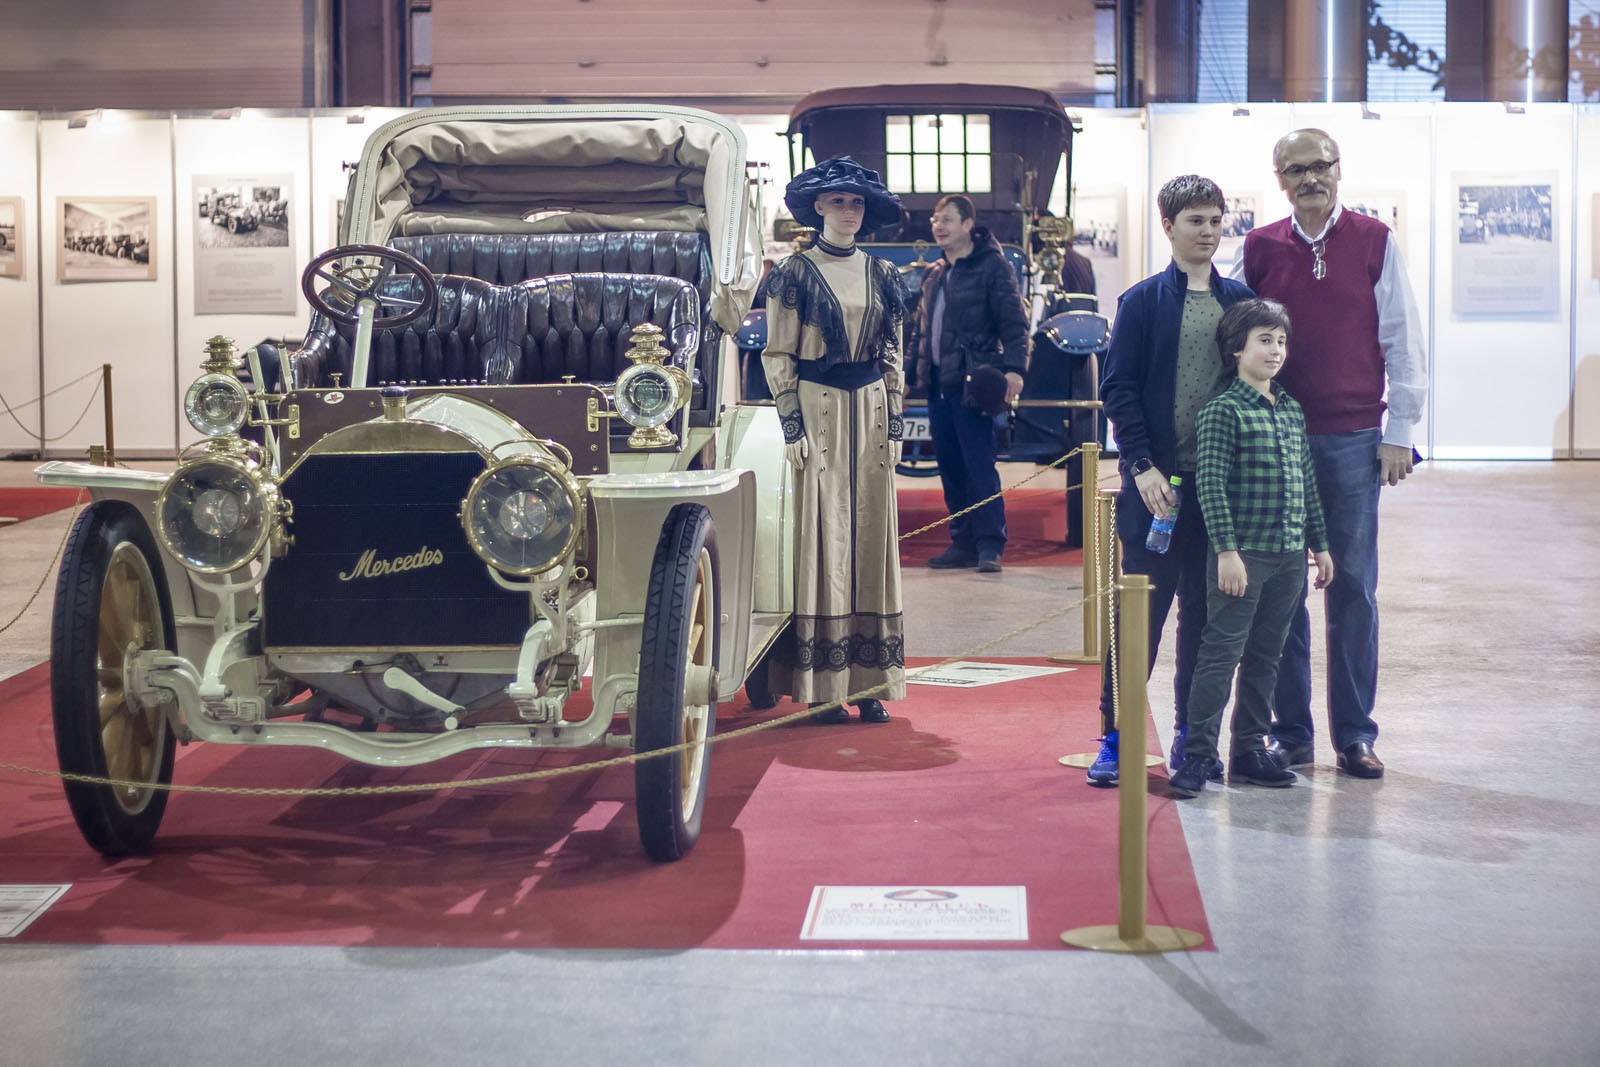 С 22 по 24 апреля в КВЦ «Экспофорум» состоится 31-я выставка старинных автомобилей «Олдтаймер-Галерея»